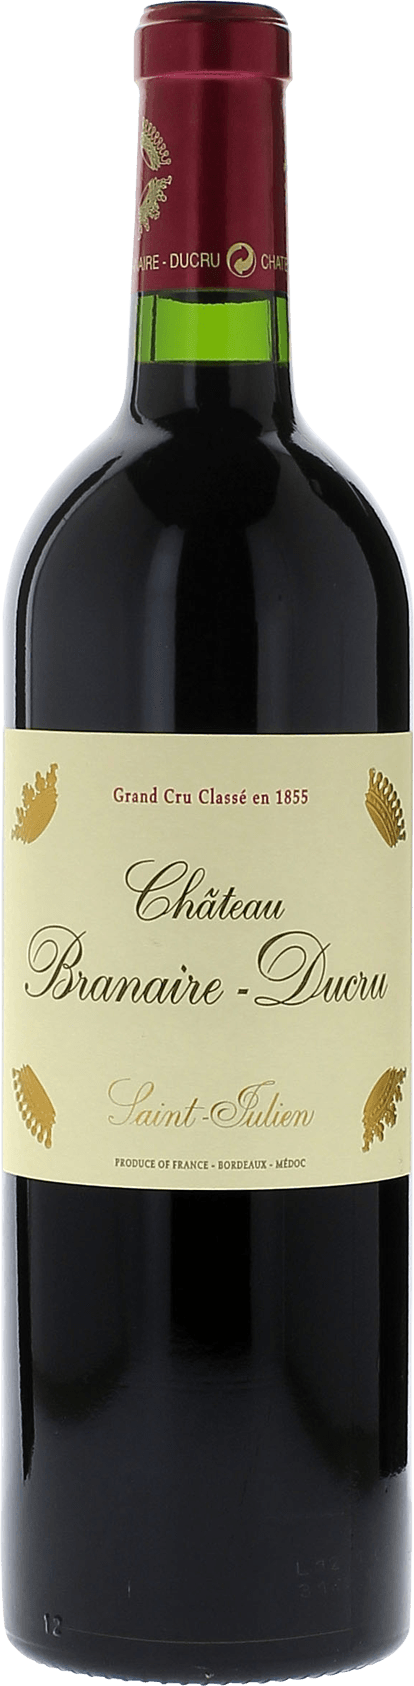 Branaire ducru 2019 4me Grand cru class Saint-Julien, Bordeaux rouge